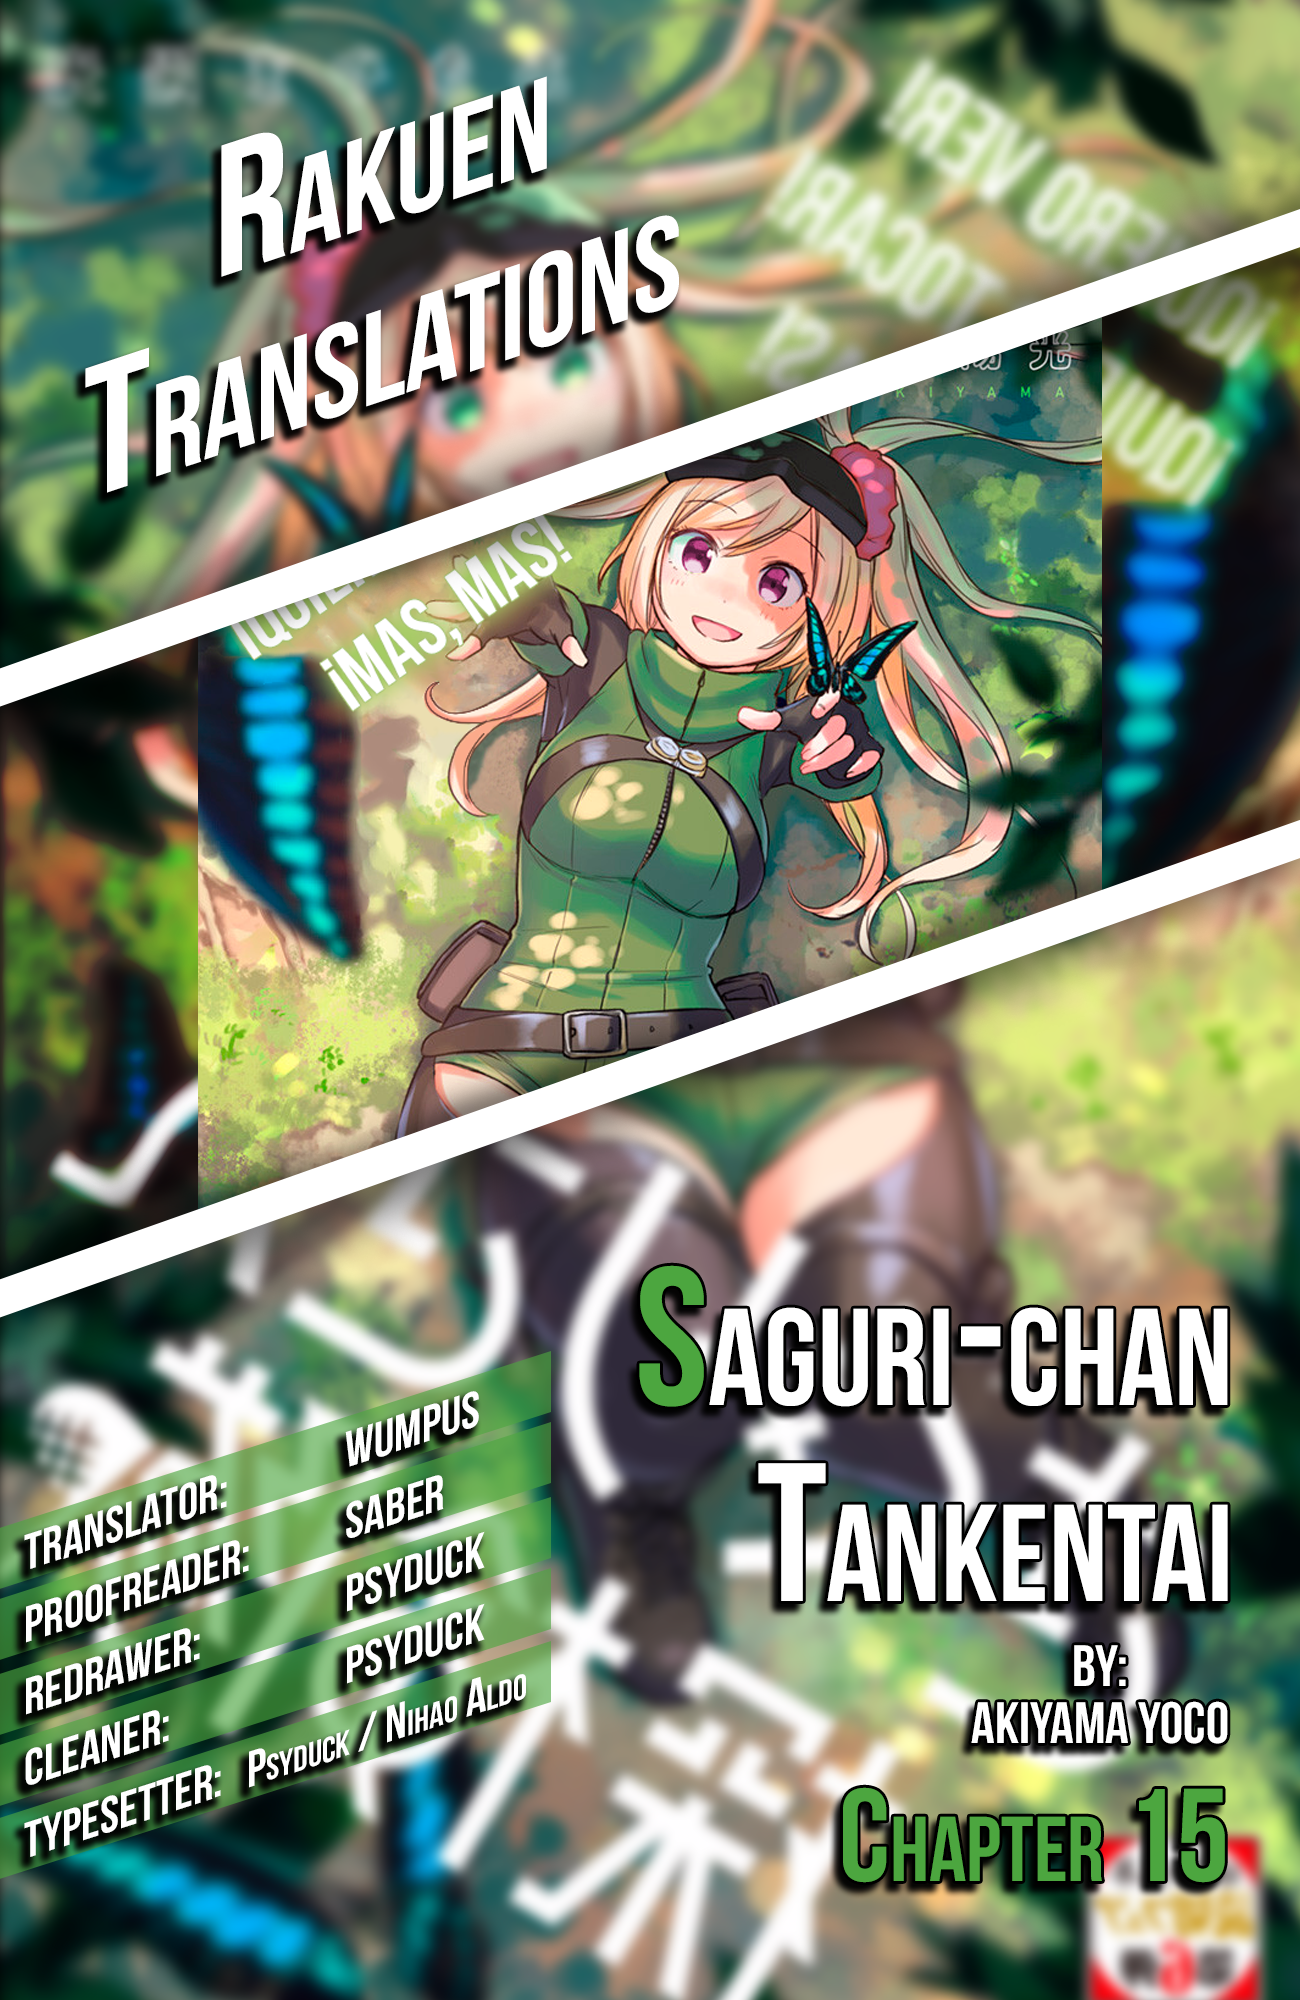 Saguri-chan Tankentai - Chapter 4951 - Image 1